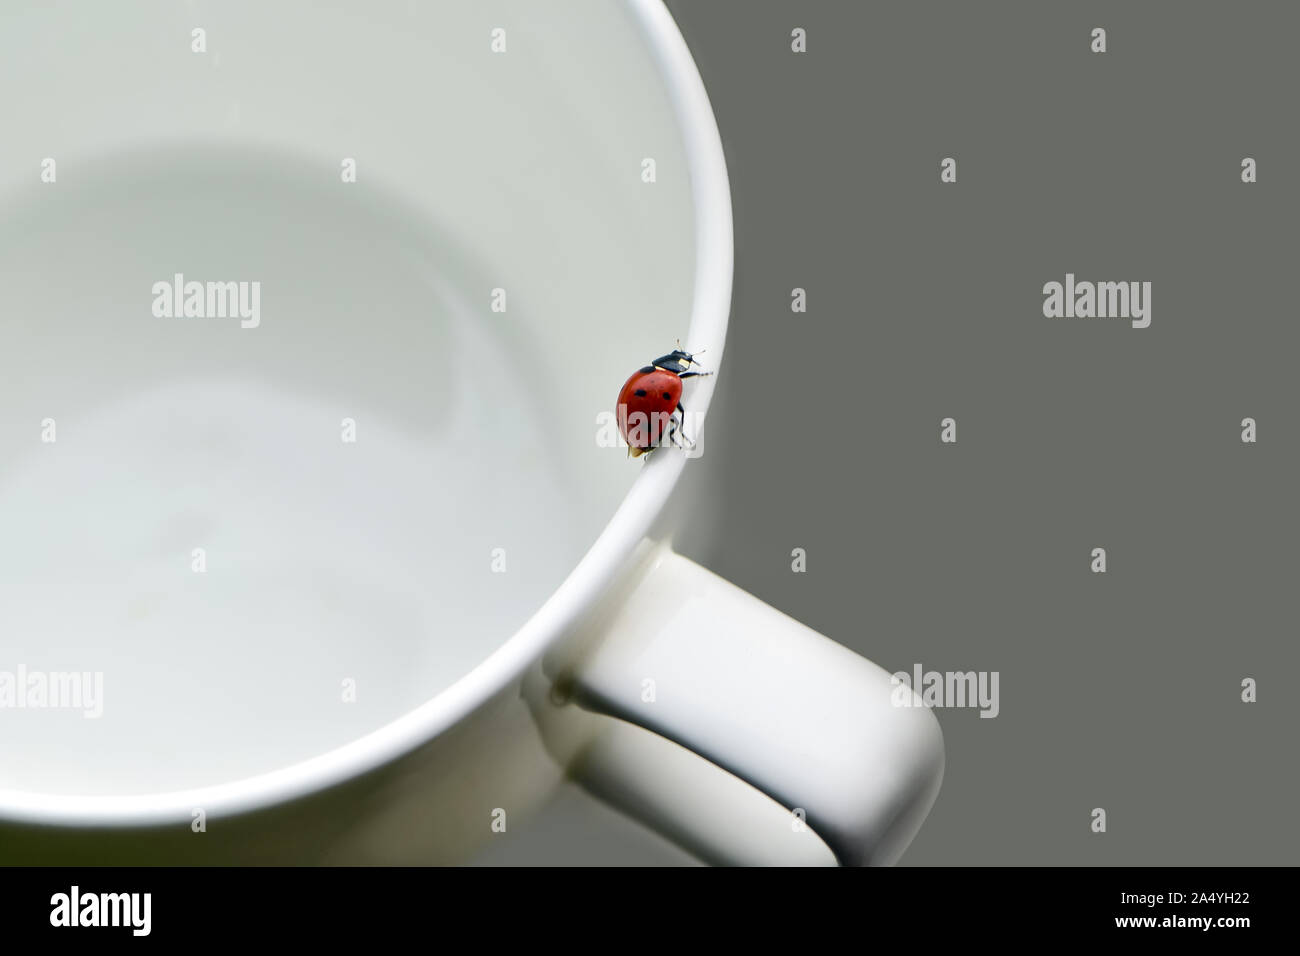 Mañana antecedentes, ladybug arrastrándose sobre una taza de café en la mesa Foto de stock